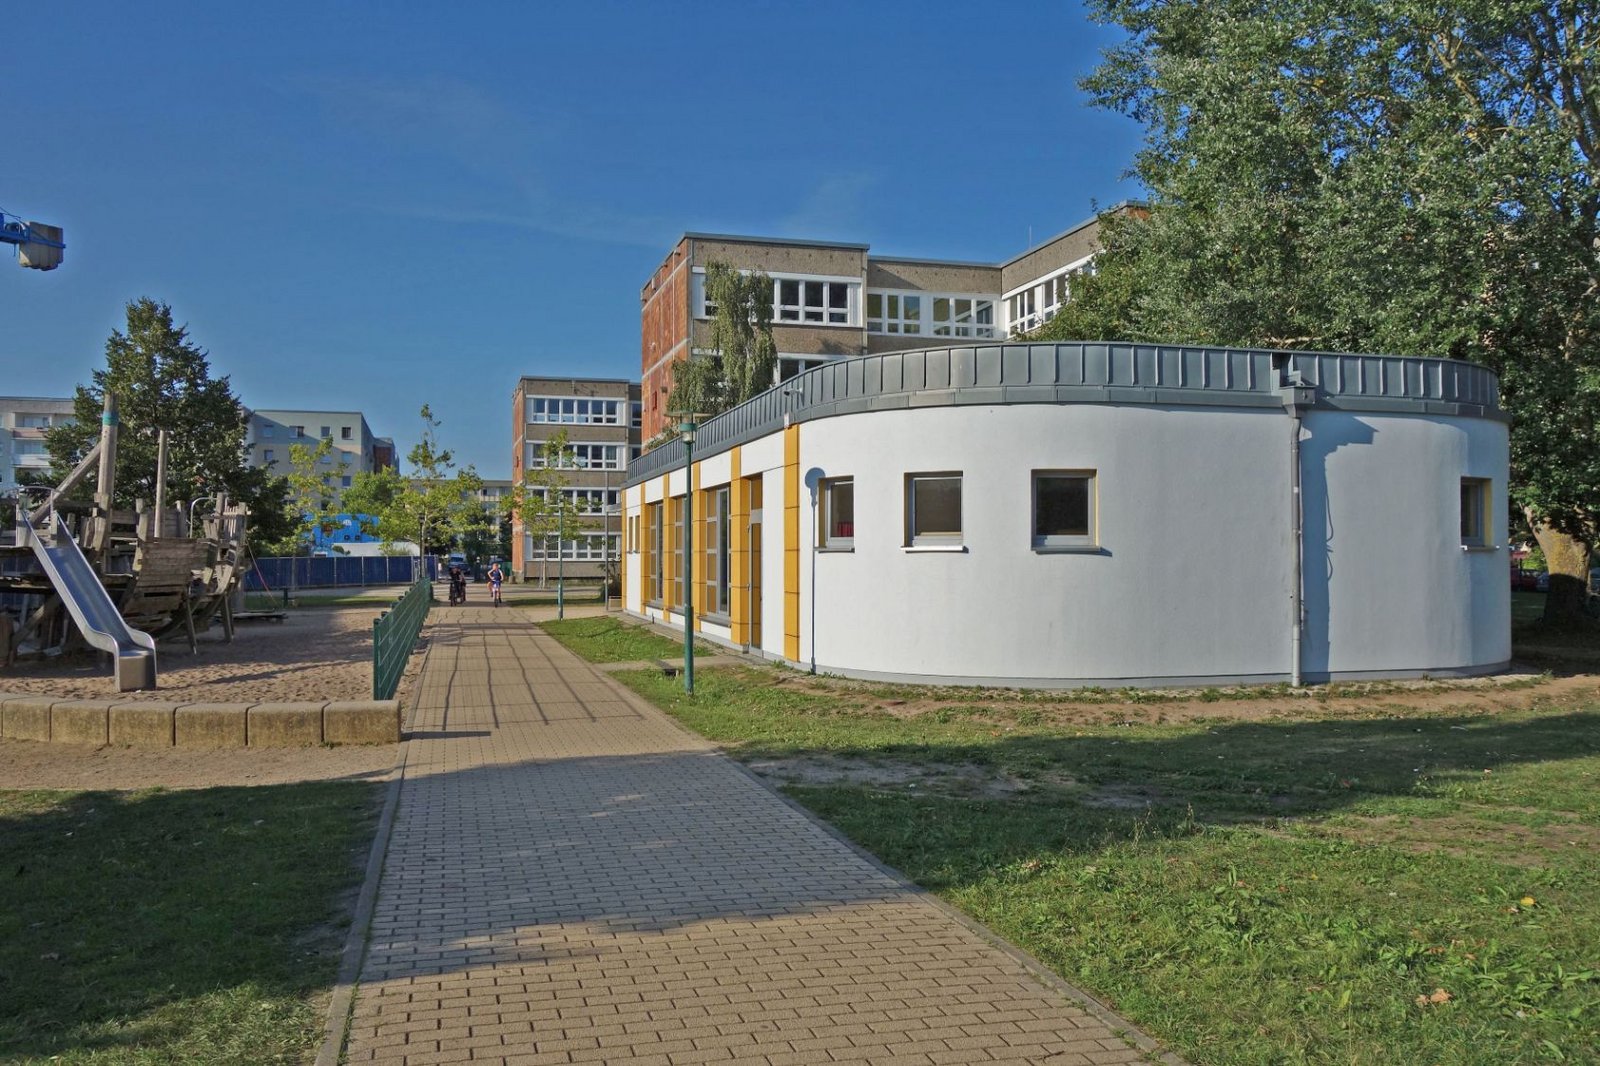 The building of the Erwin Fischer School in Greifswald